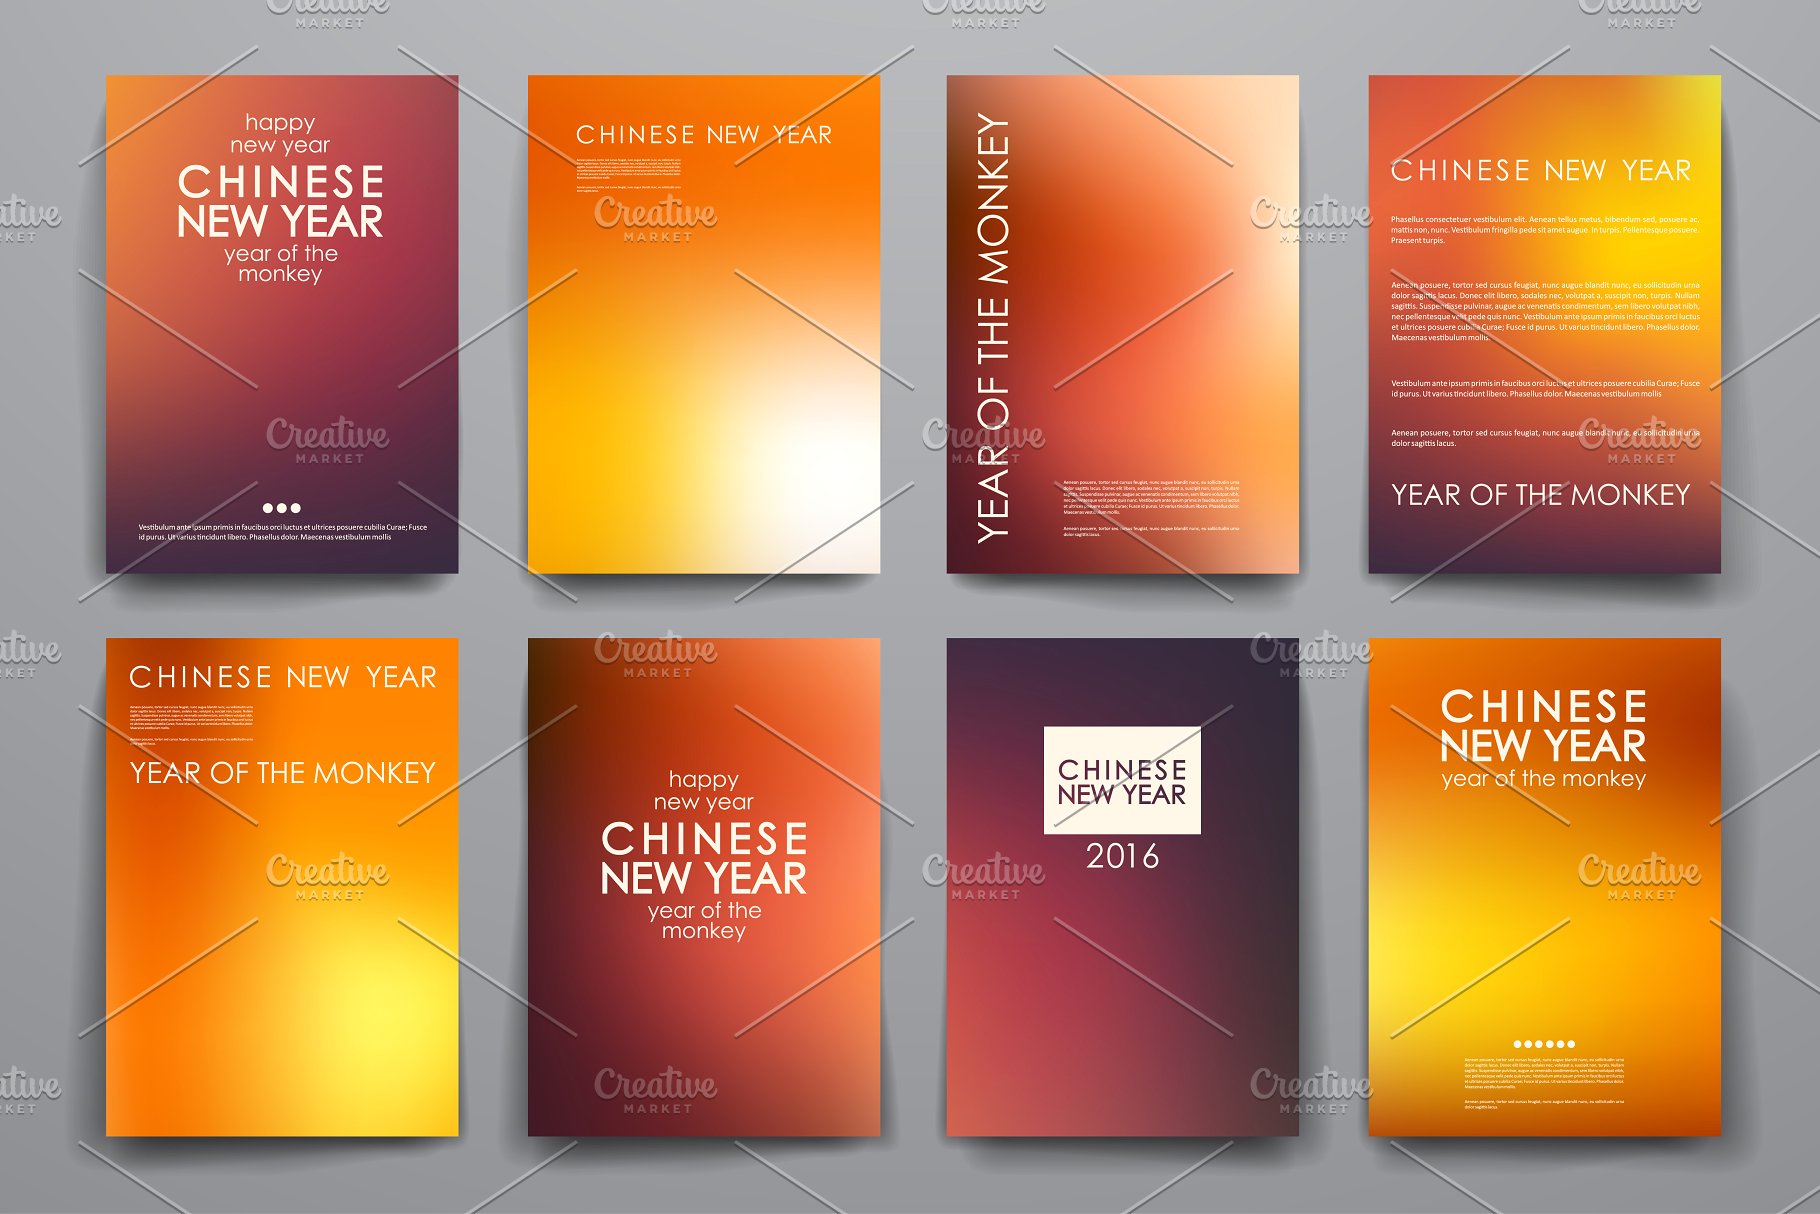 中国新年主题风小册子画册模板 Chinese New Year Brochures插图(3)